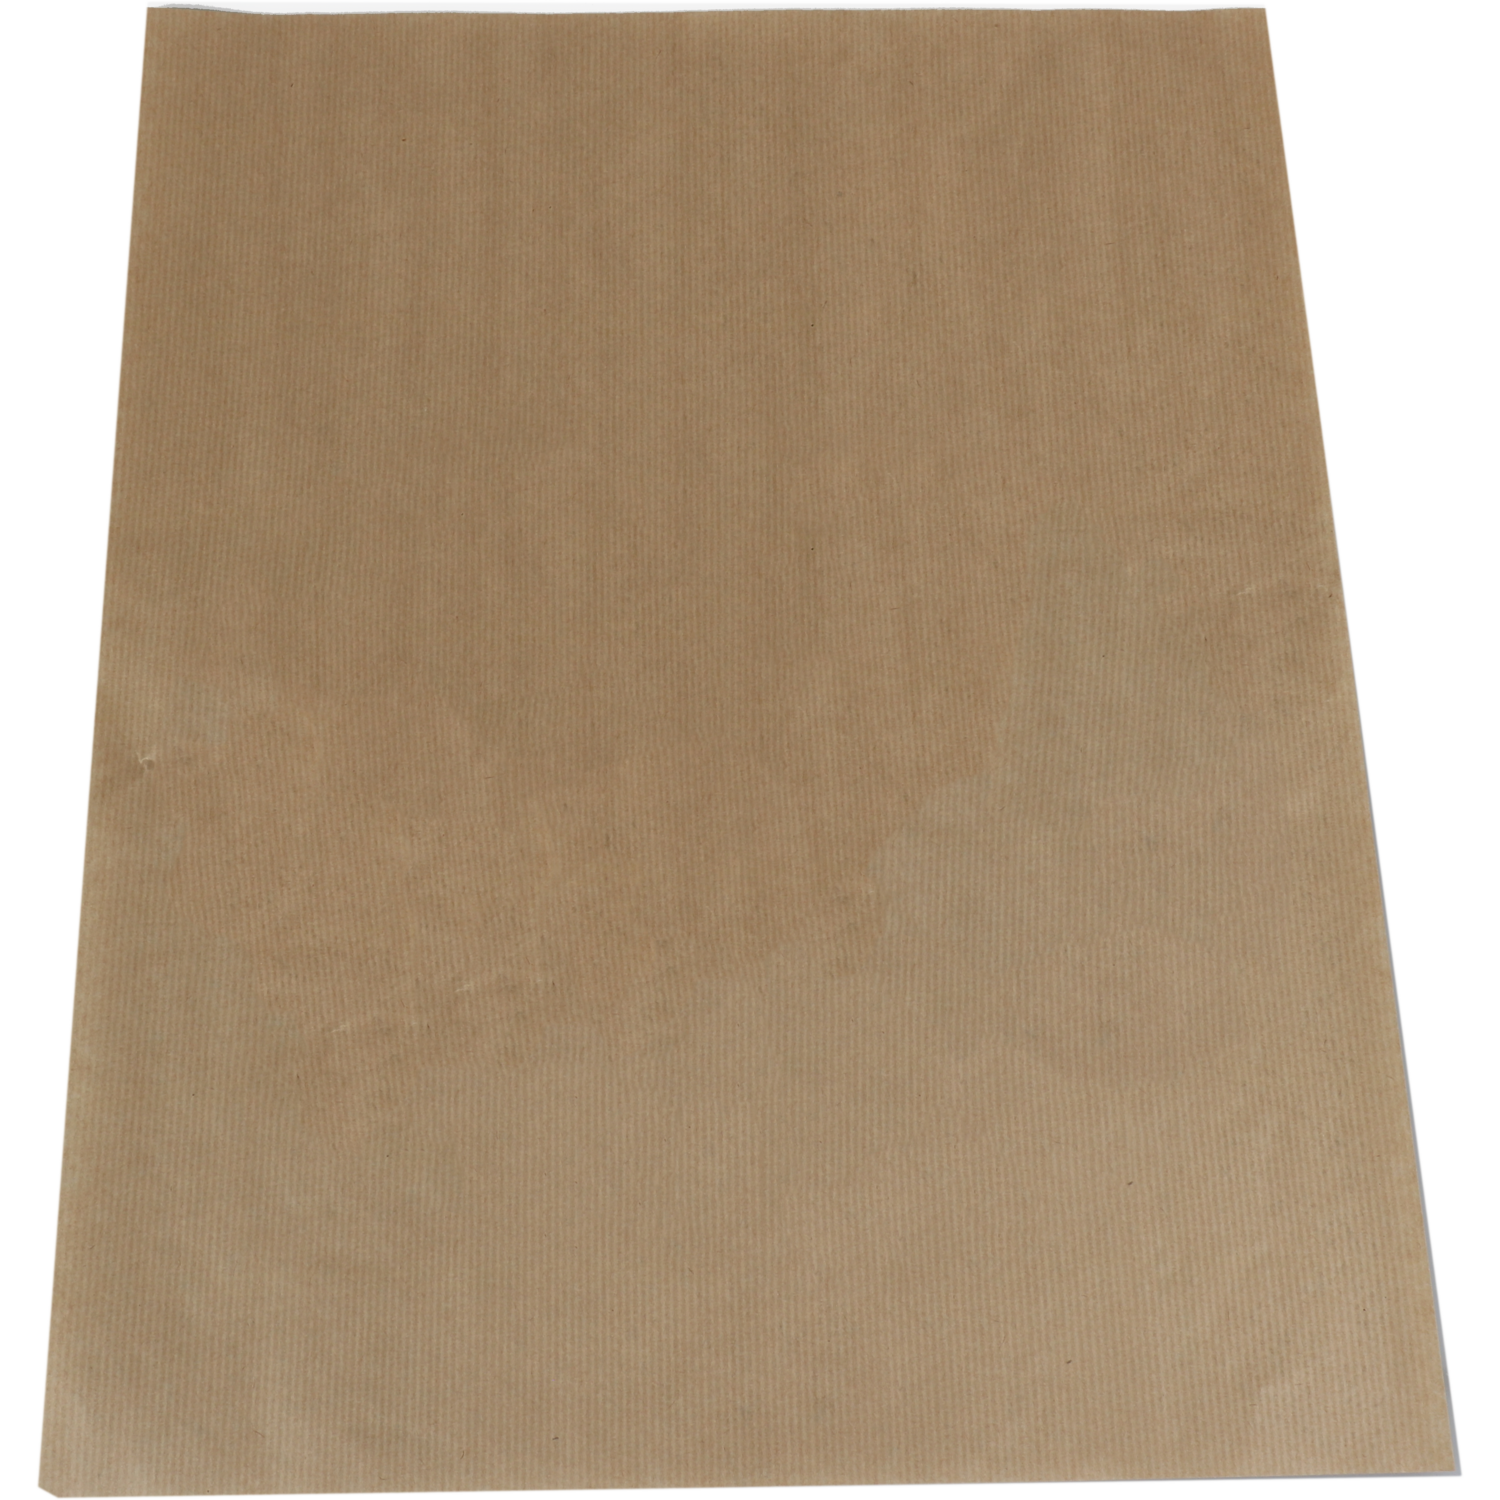 Papier, Edelpackpapier, 48x40cm, bruin 1